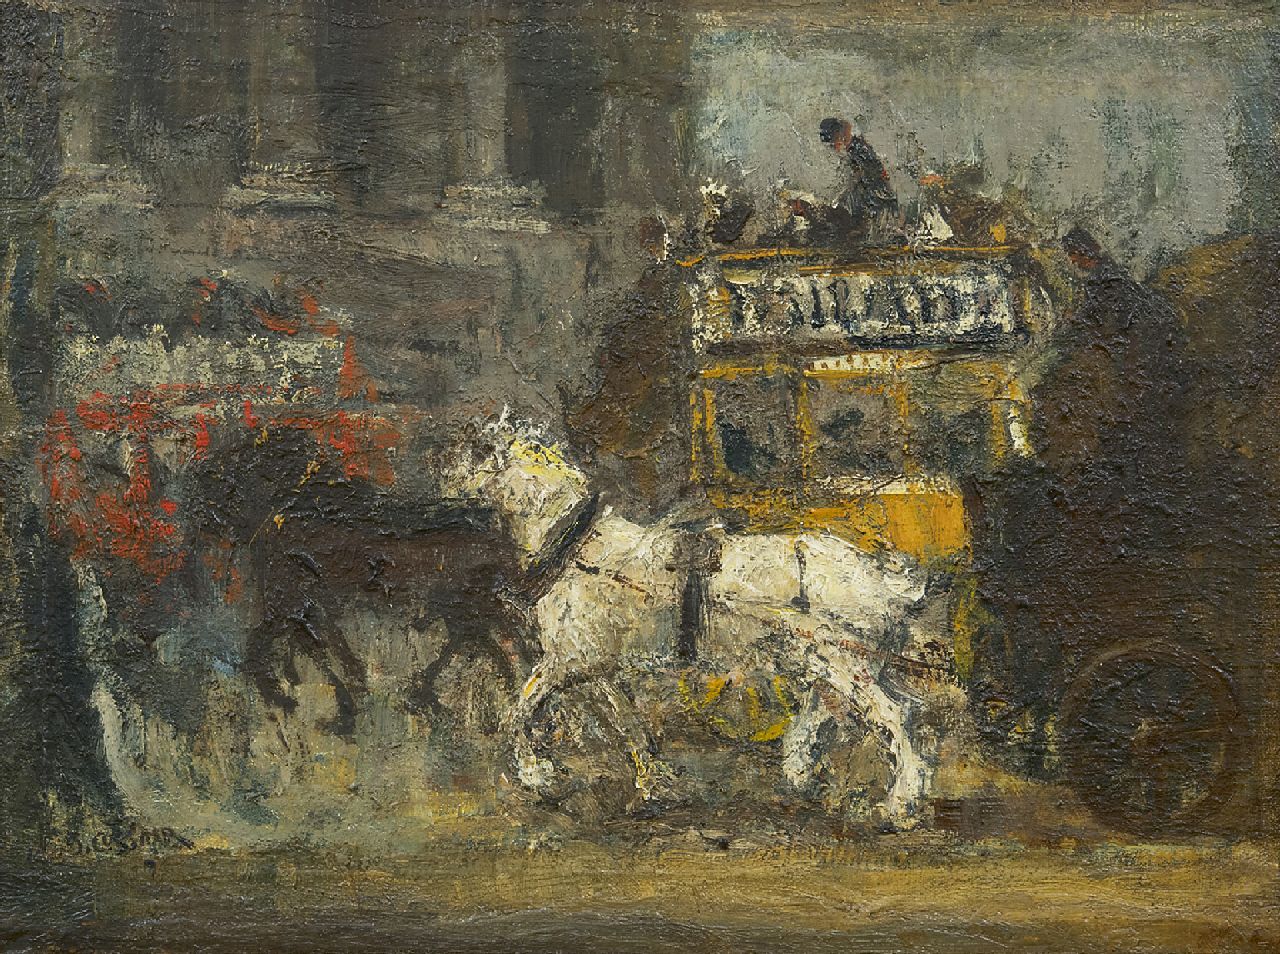 Cossaar J.C.W.  | Jacobus Cornelis Wyand 'Ko' Cossaar, Londense paardentram, olieverf op doek op paneel 31,2 x 41,8 cm, gesigneerd linksonder